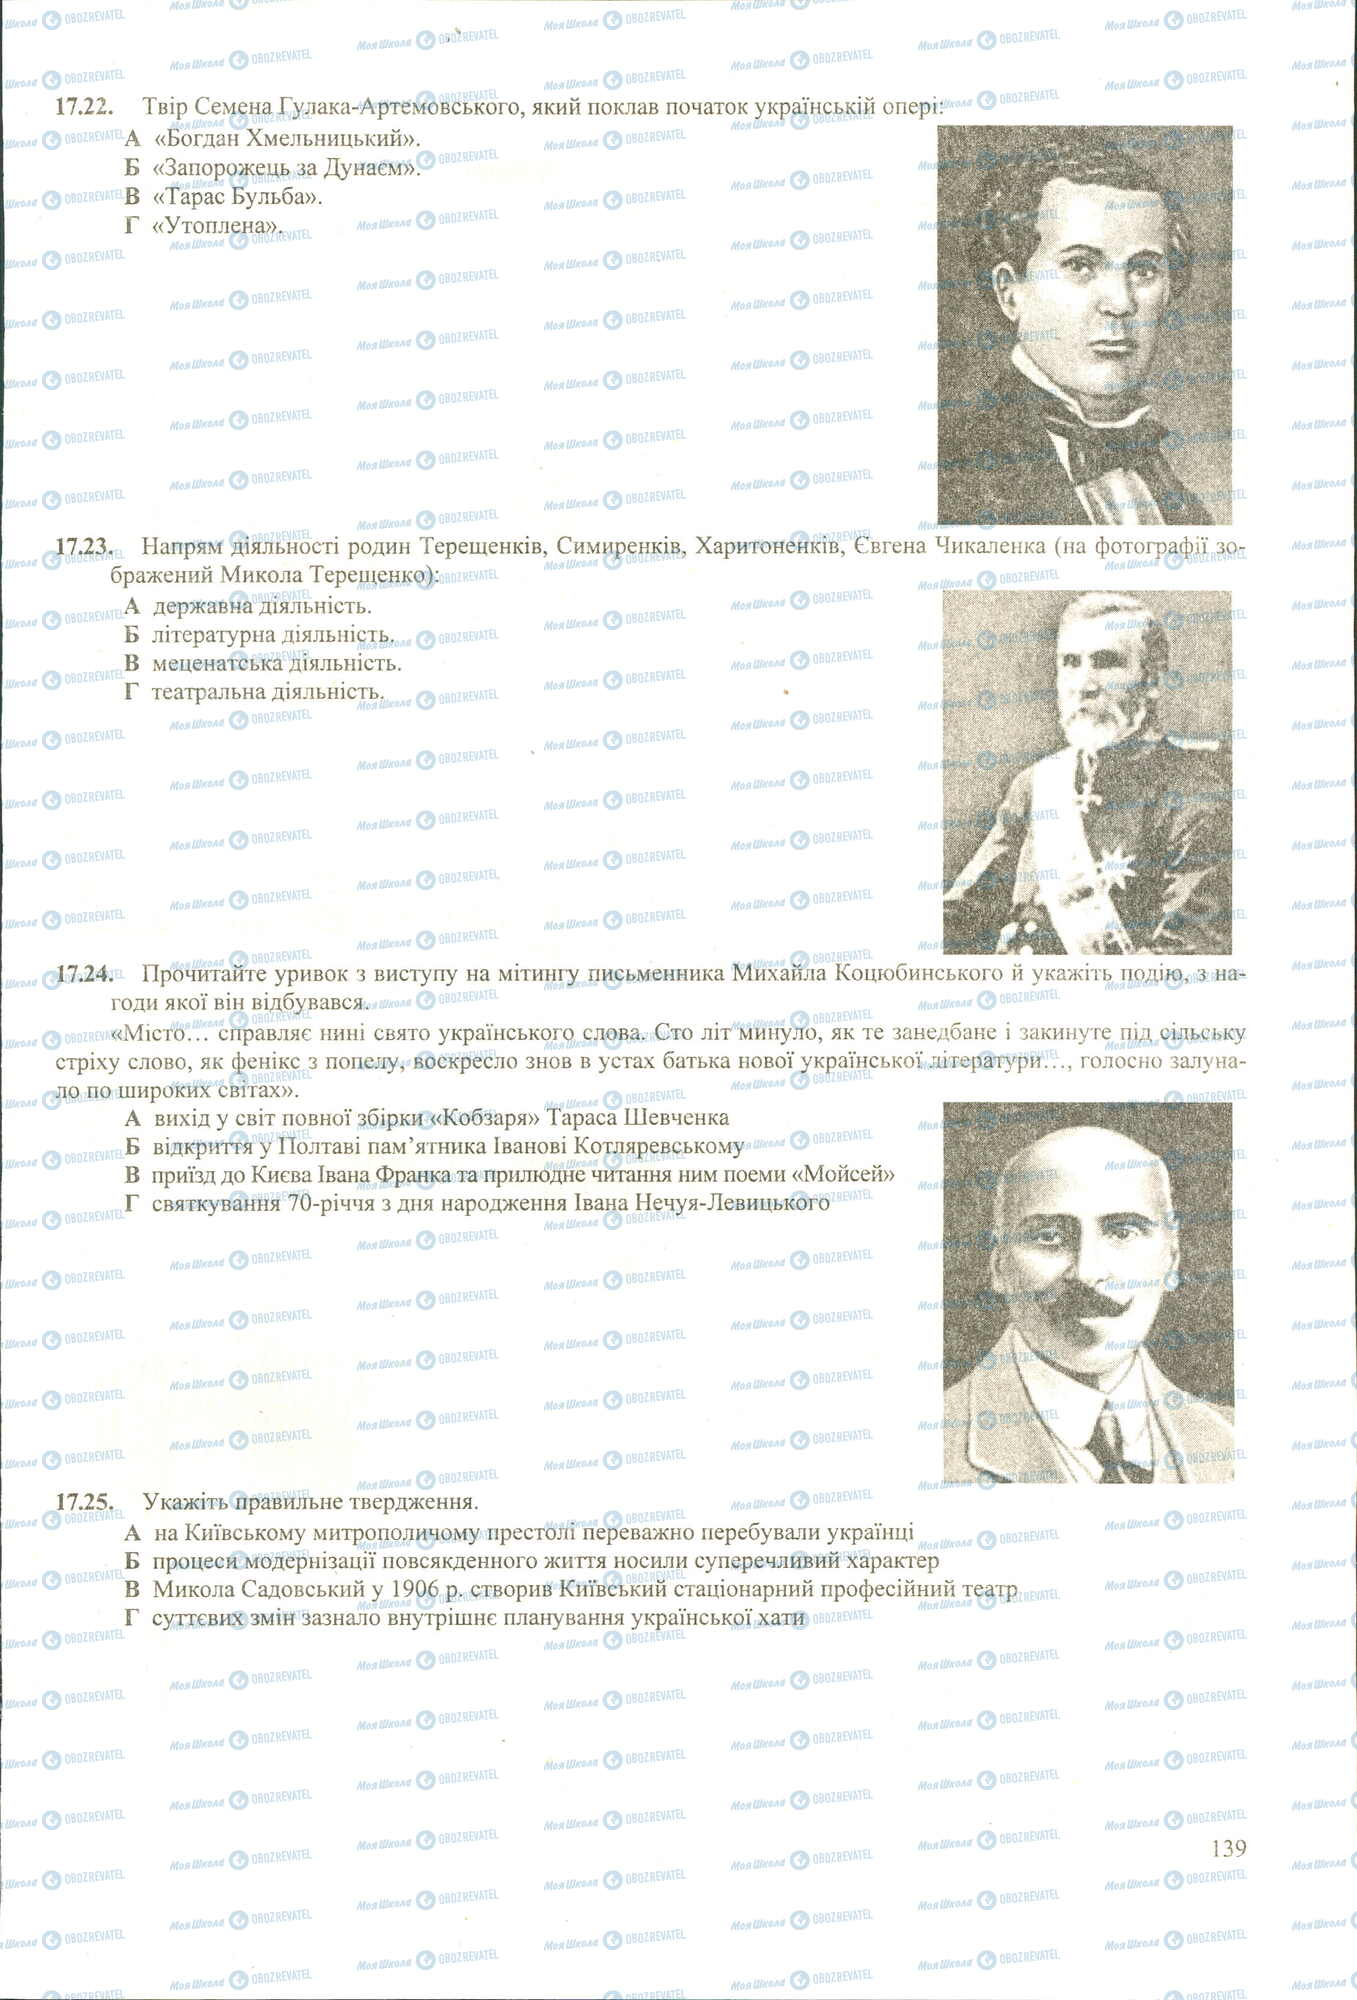 ЗНО История Украины 11 класс страница 22-25